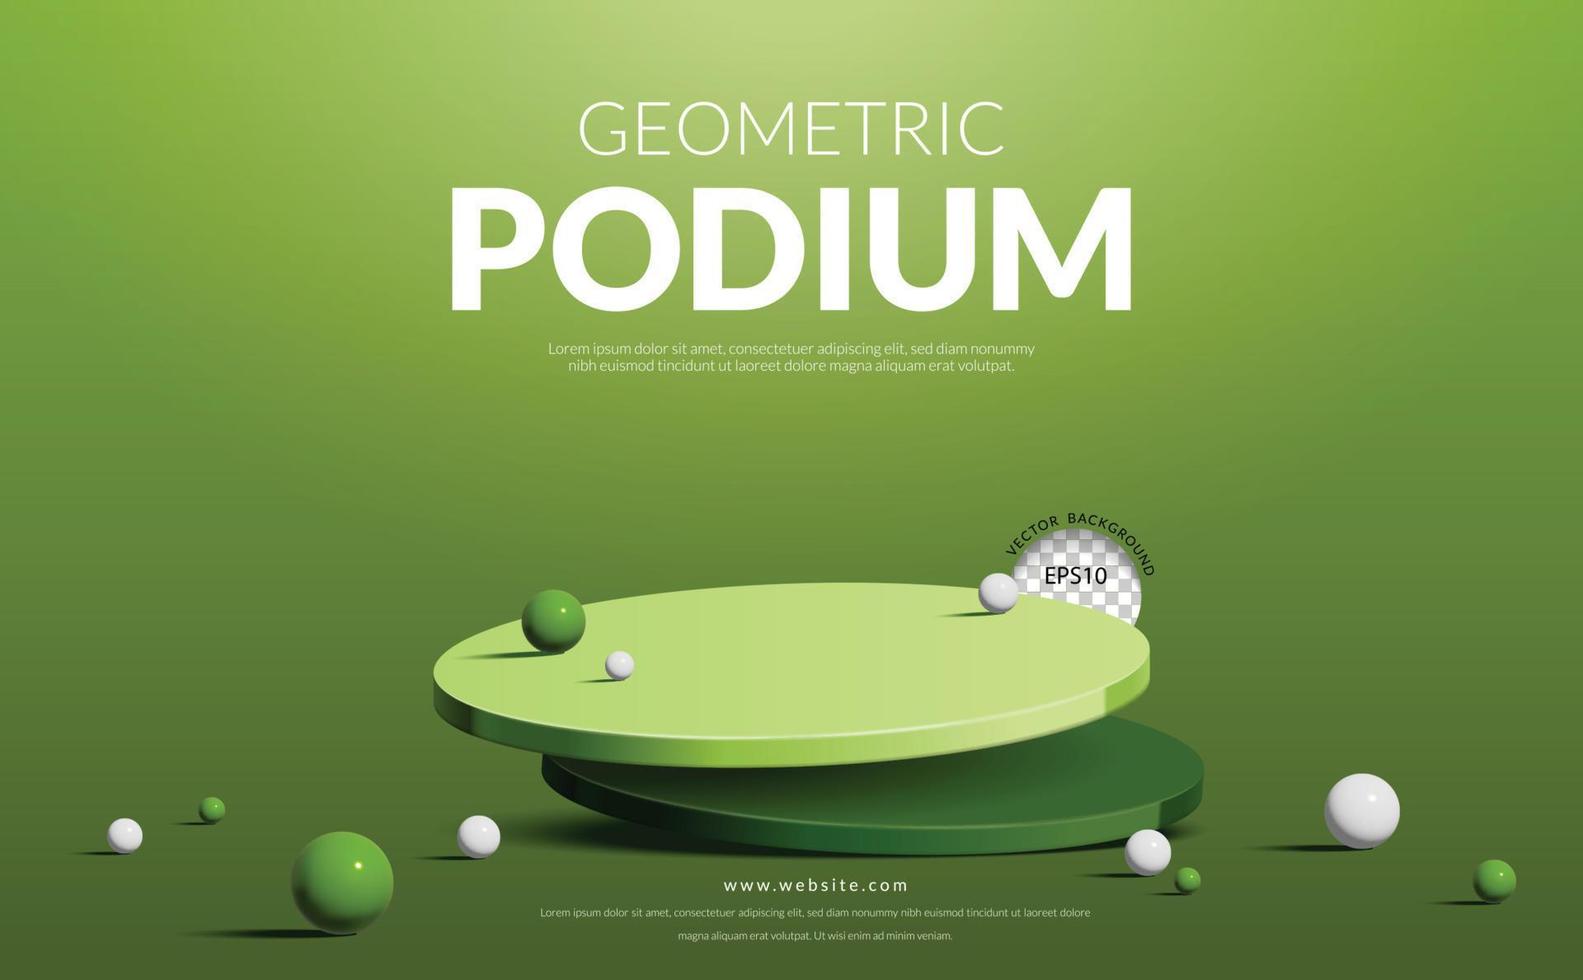 affichage géométrique du produit en deux étapes, podium vert avec ballon sur fond vert, illustration vectorielle vecteur